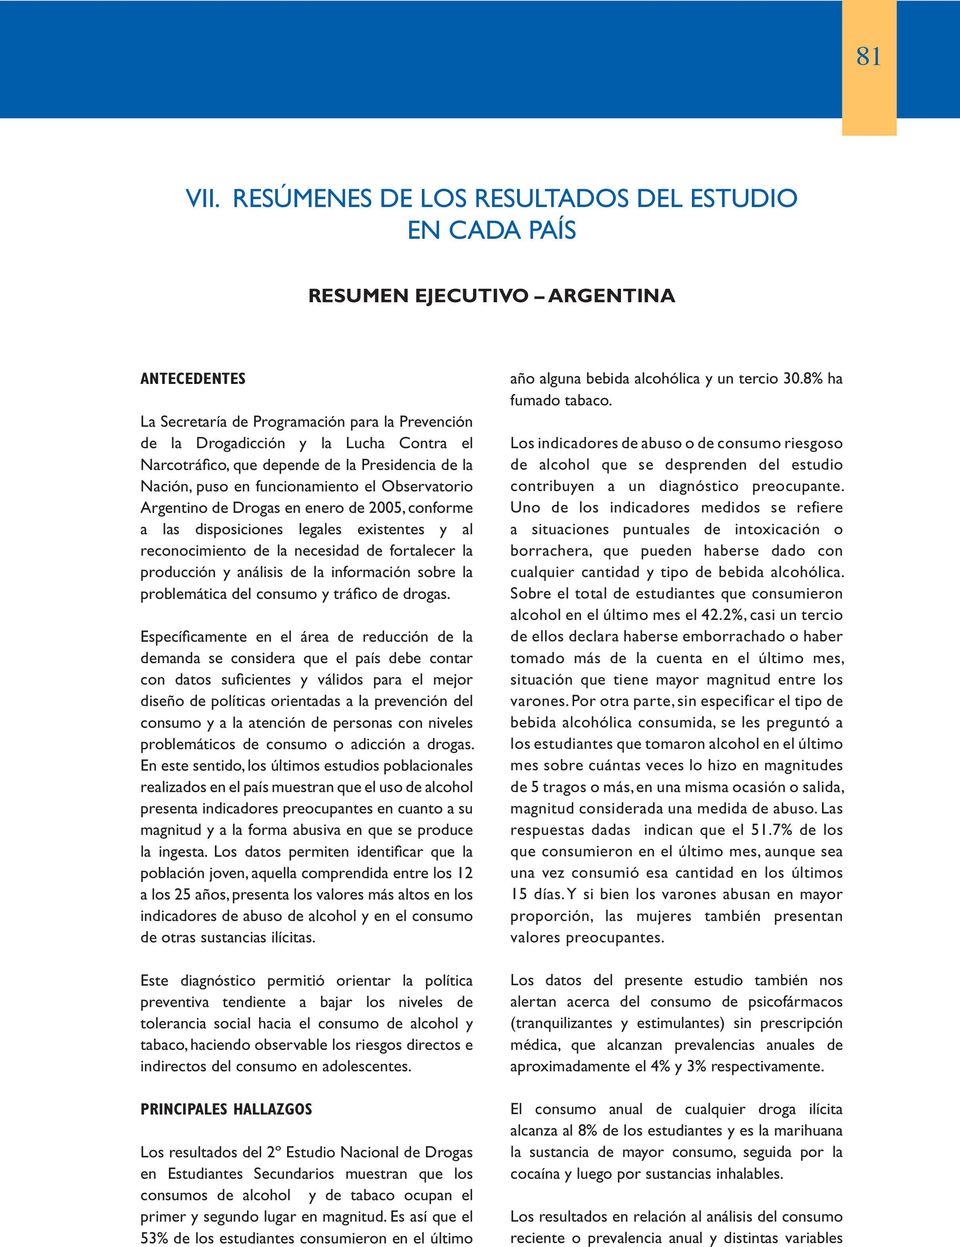 que depende de la Presidencia de la Nación, puso en funcionamiento el Observatorio Argentino de Drogas en enero de 2005, conforme a las disposiciones legales existentes y al reconocimiento de la